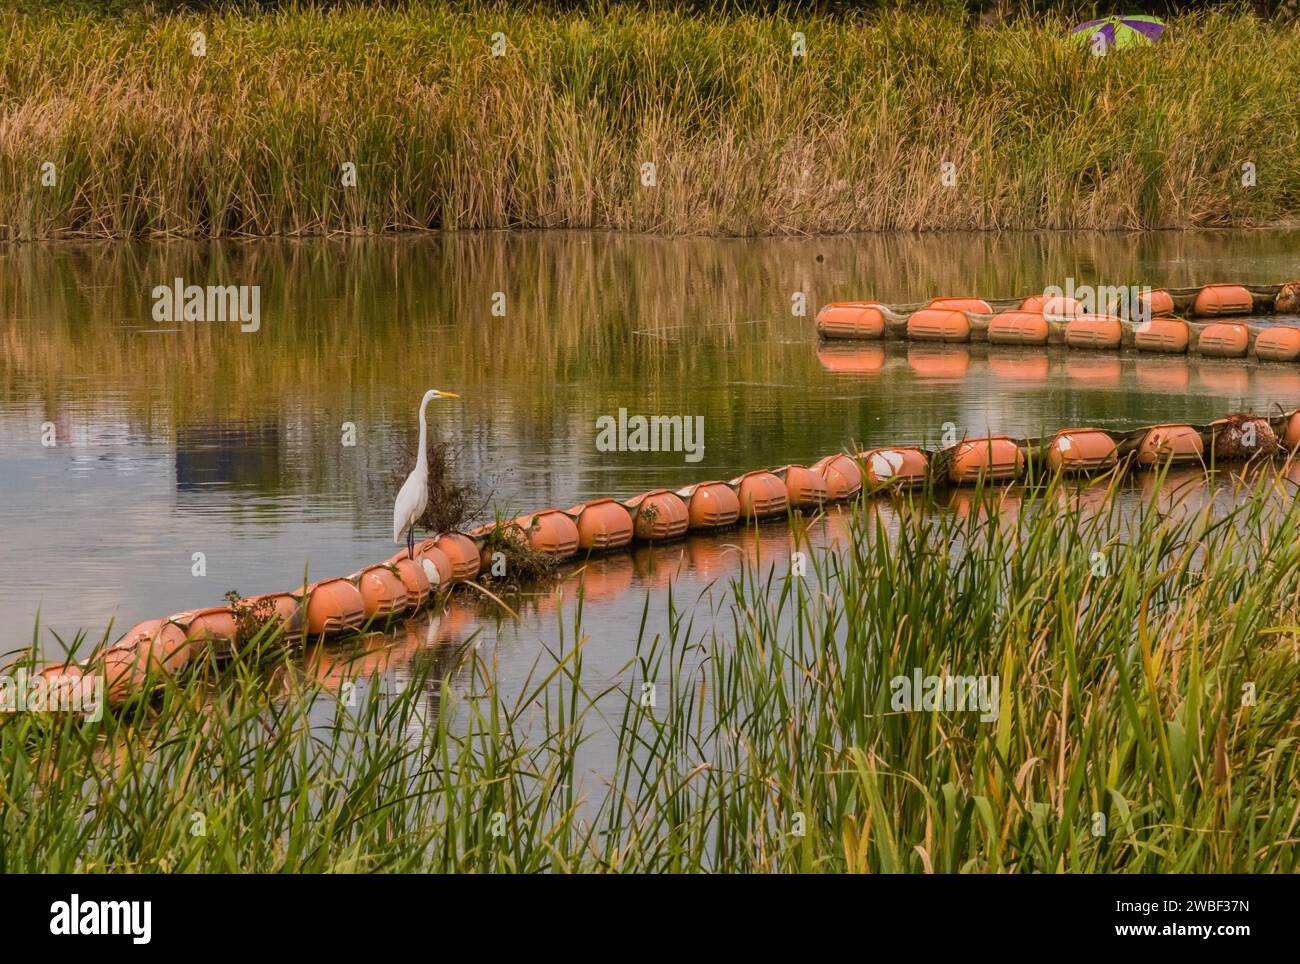 Weißer Reiher, der auf einem orangen Schwimmer im Fluss steht, mit hohem Schilf am Ufer und einem grünen und kastanienbraunen Regenschirm, der aus dem Schilf ragt Stockfoto